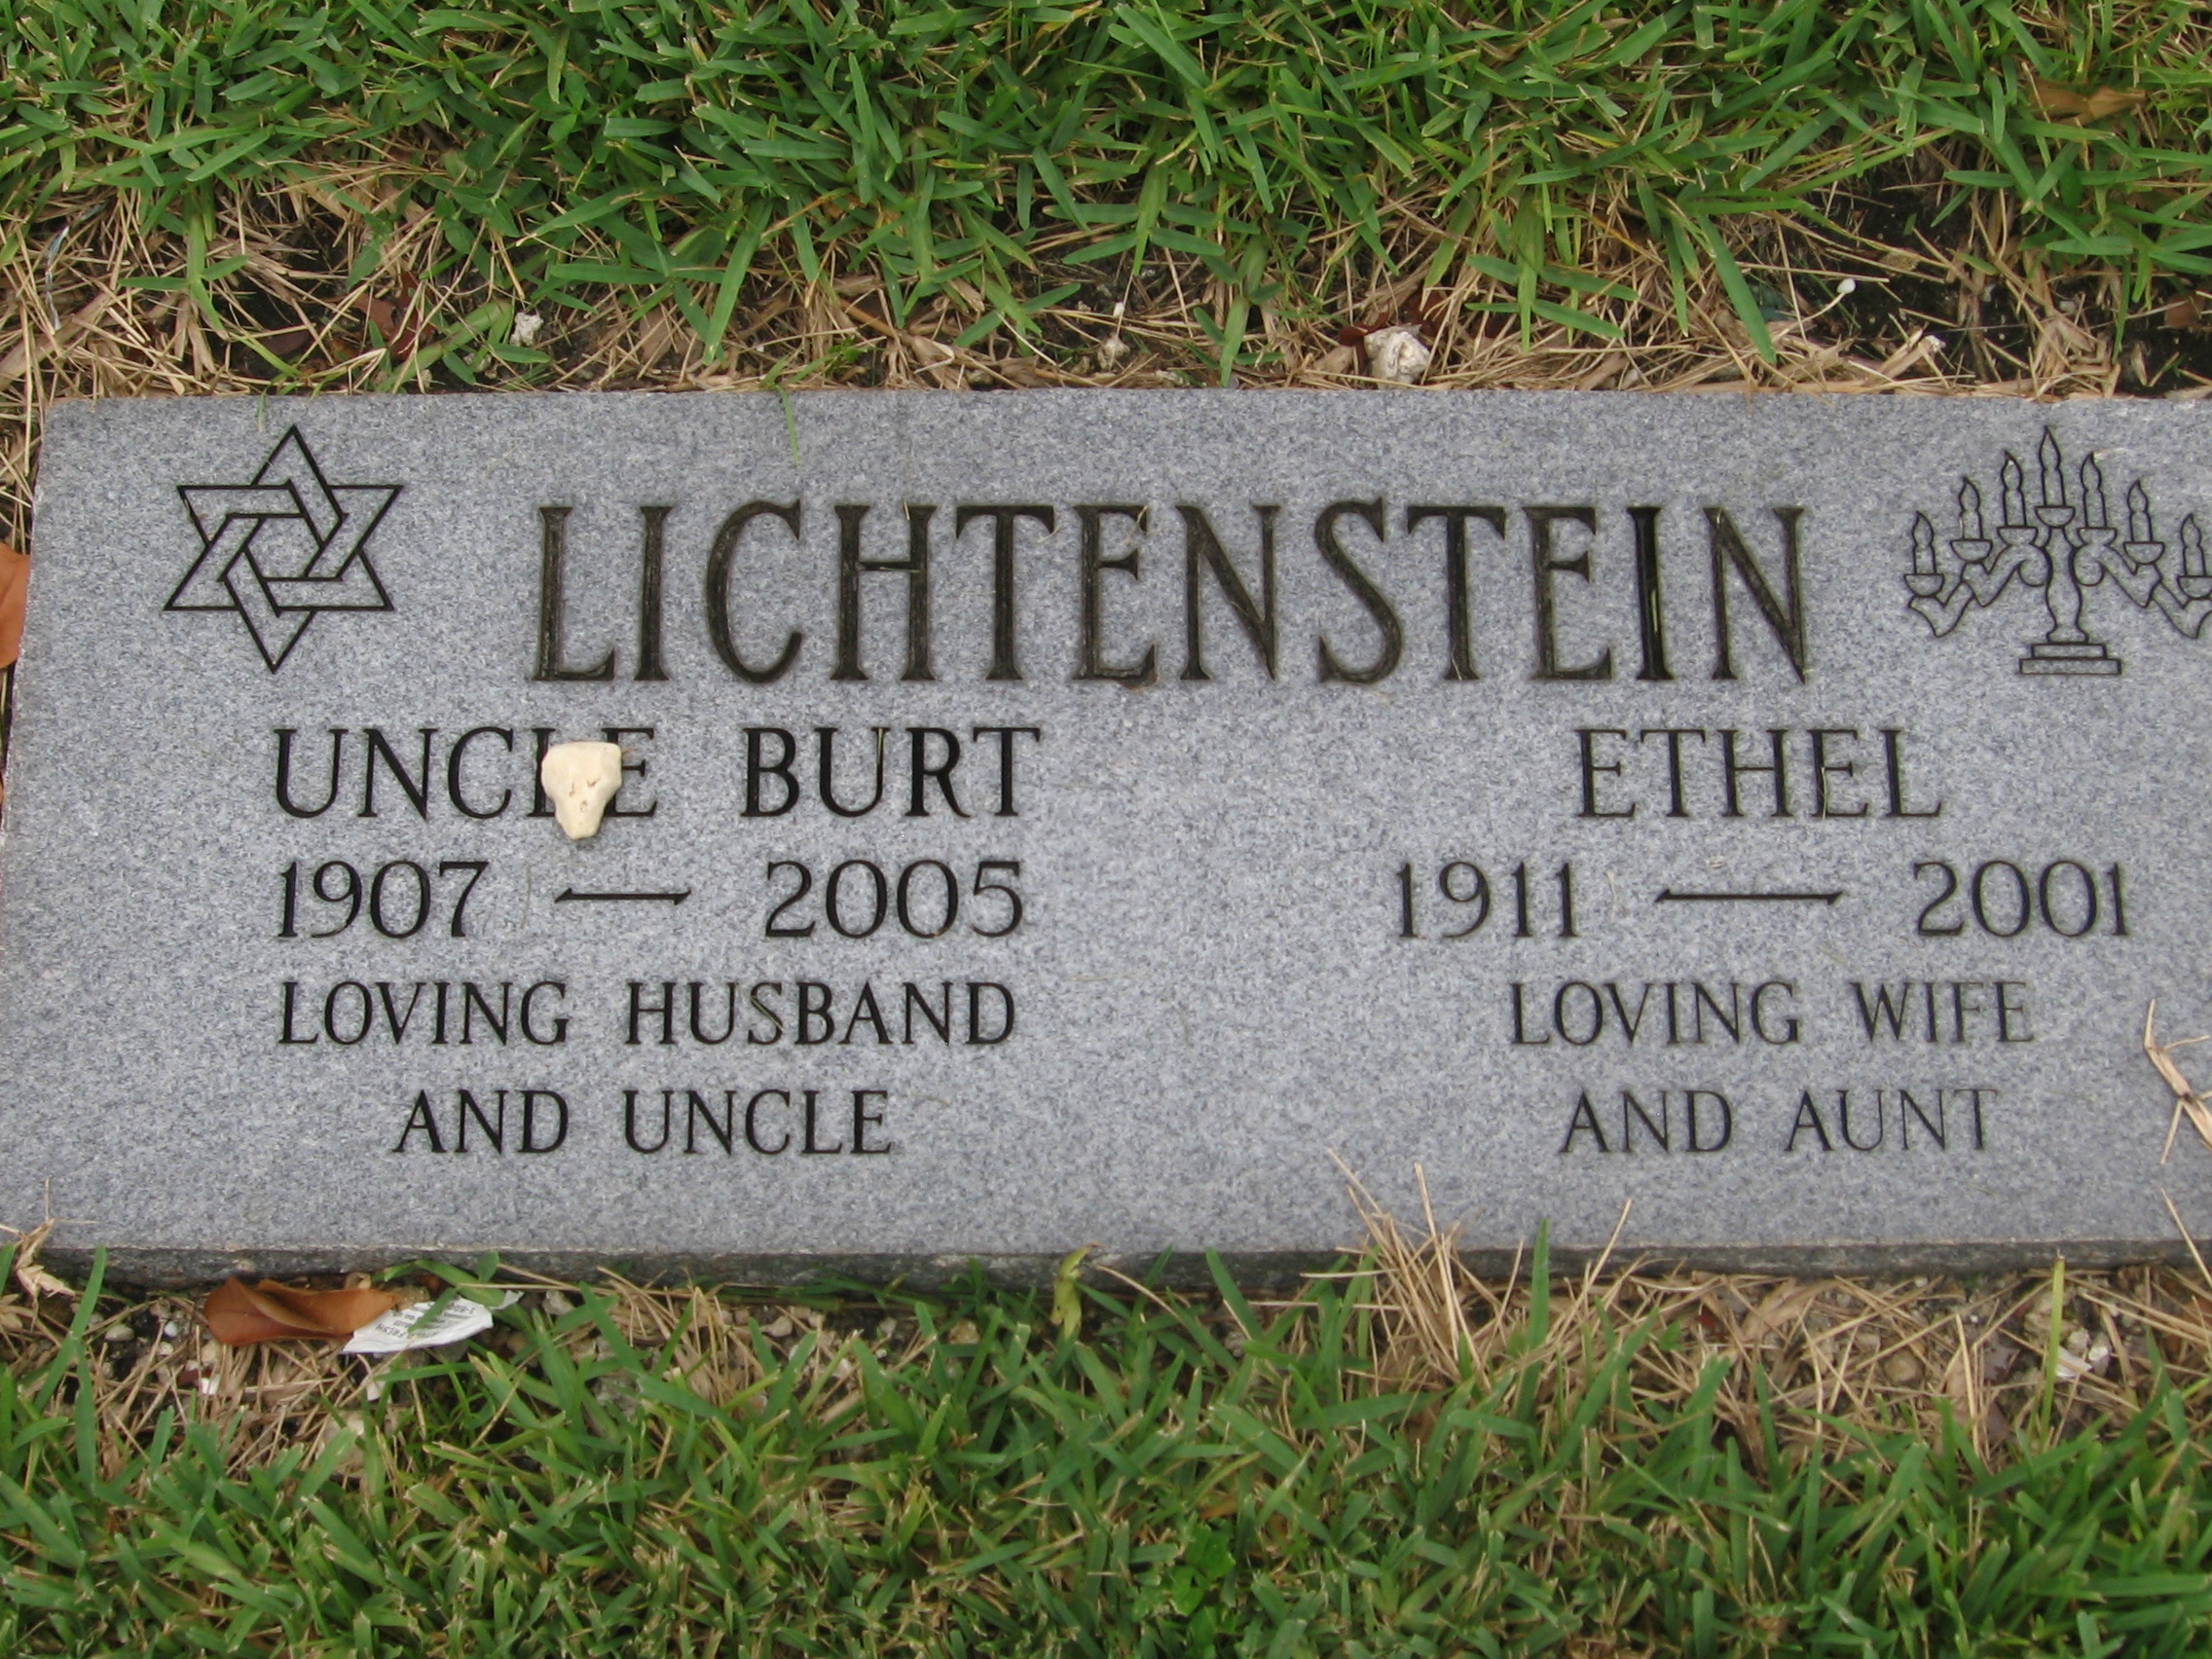 Burt Lichtenstein